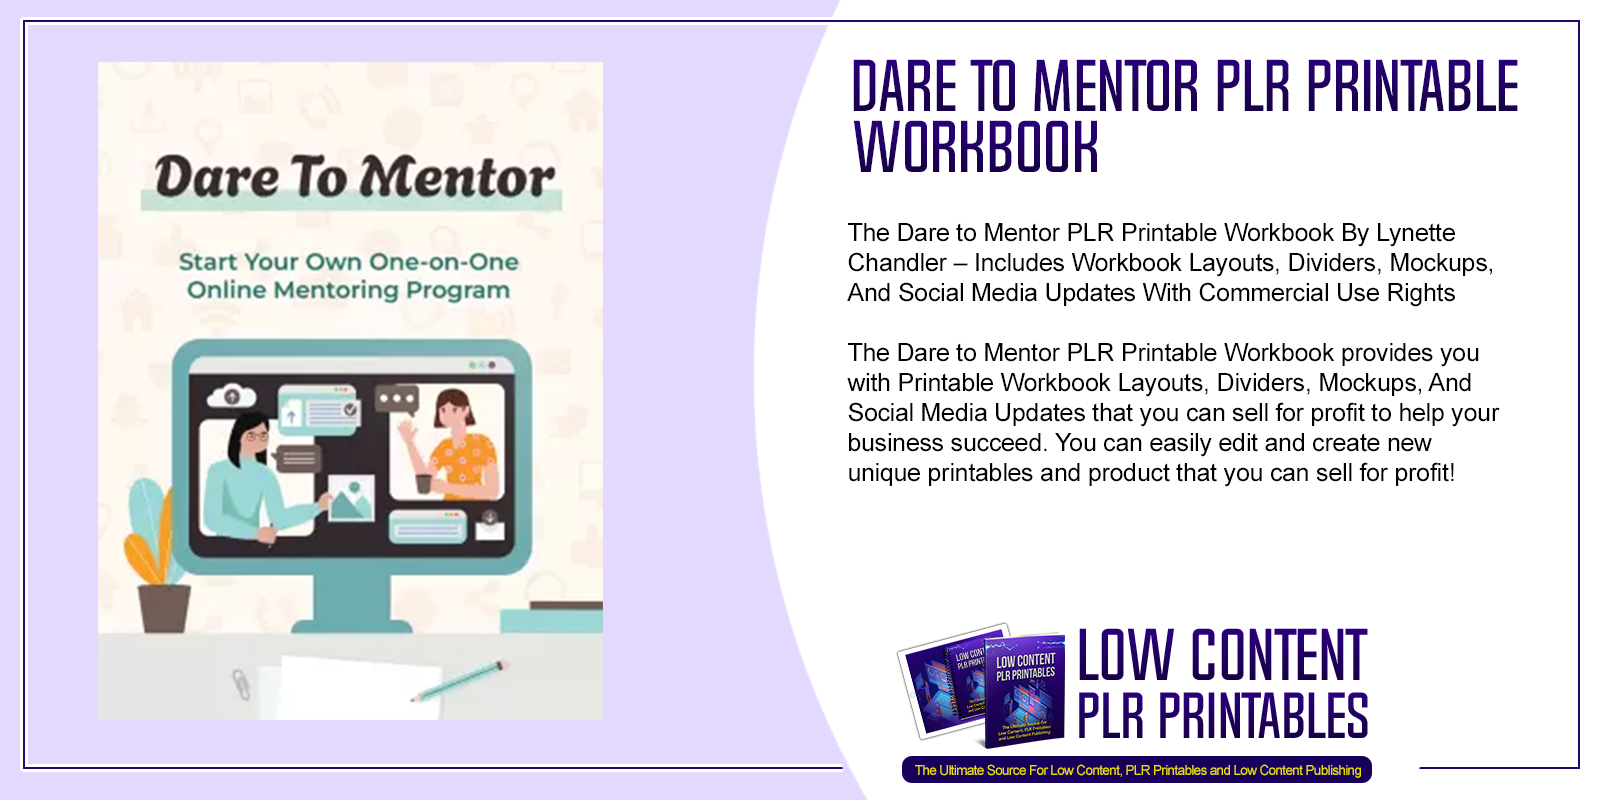 Dare to Mentor PLR Printable Workbook 3